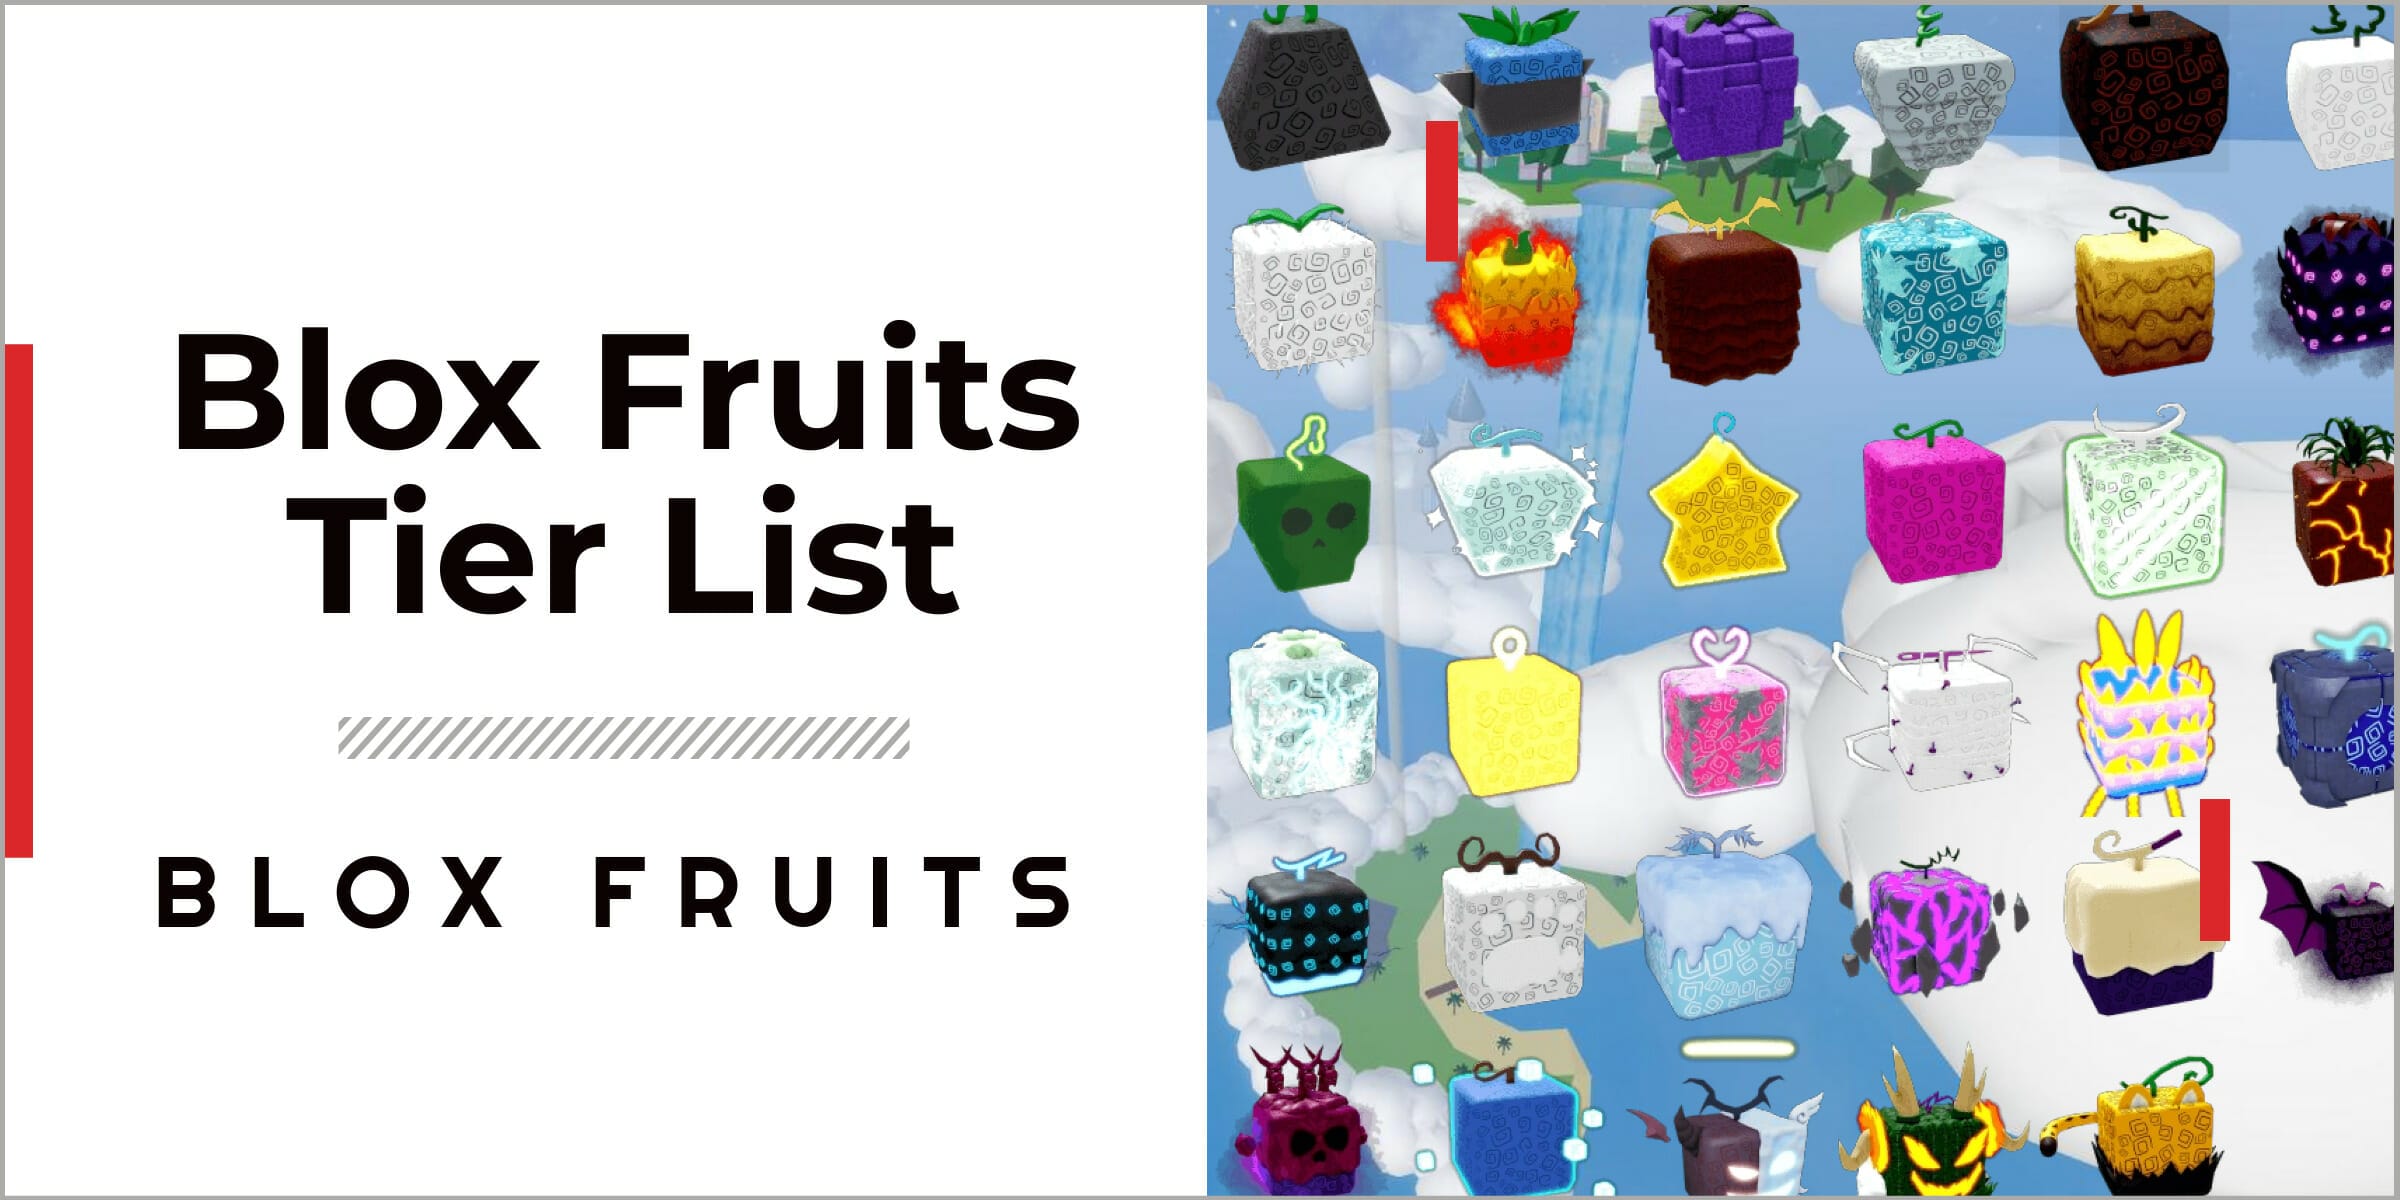 Aopg Fruit Tier List 2023 December - Vampire Fruit Update